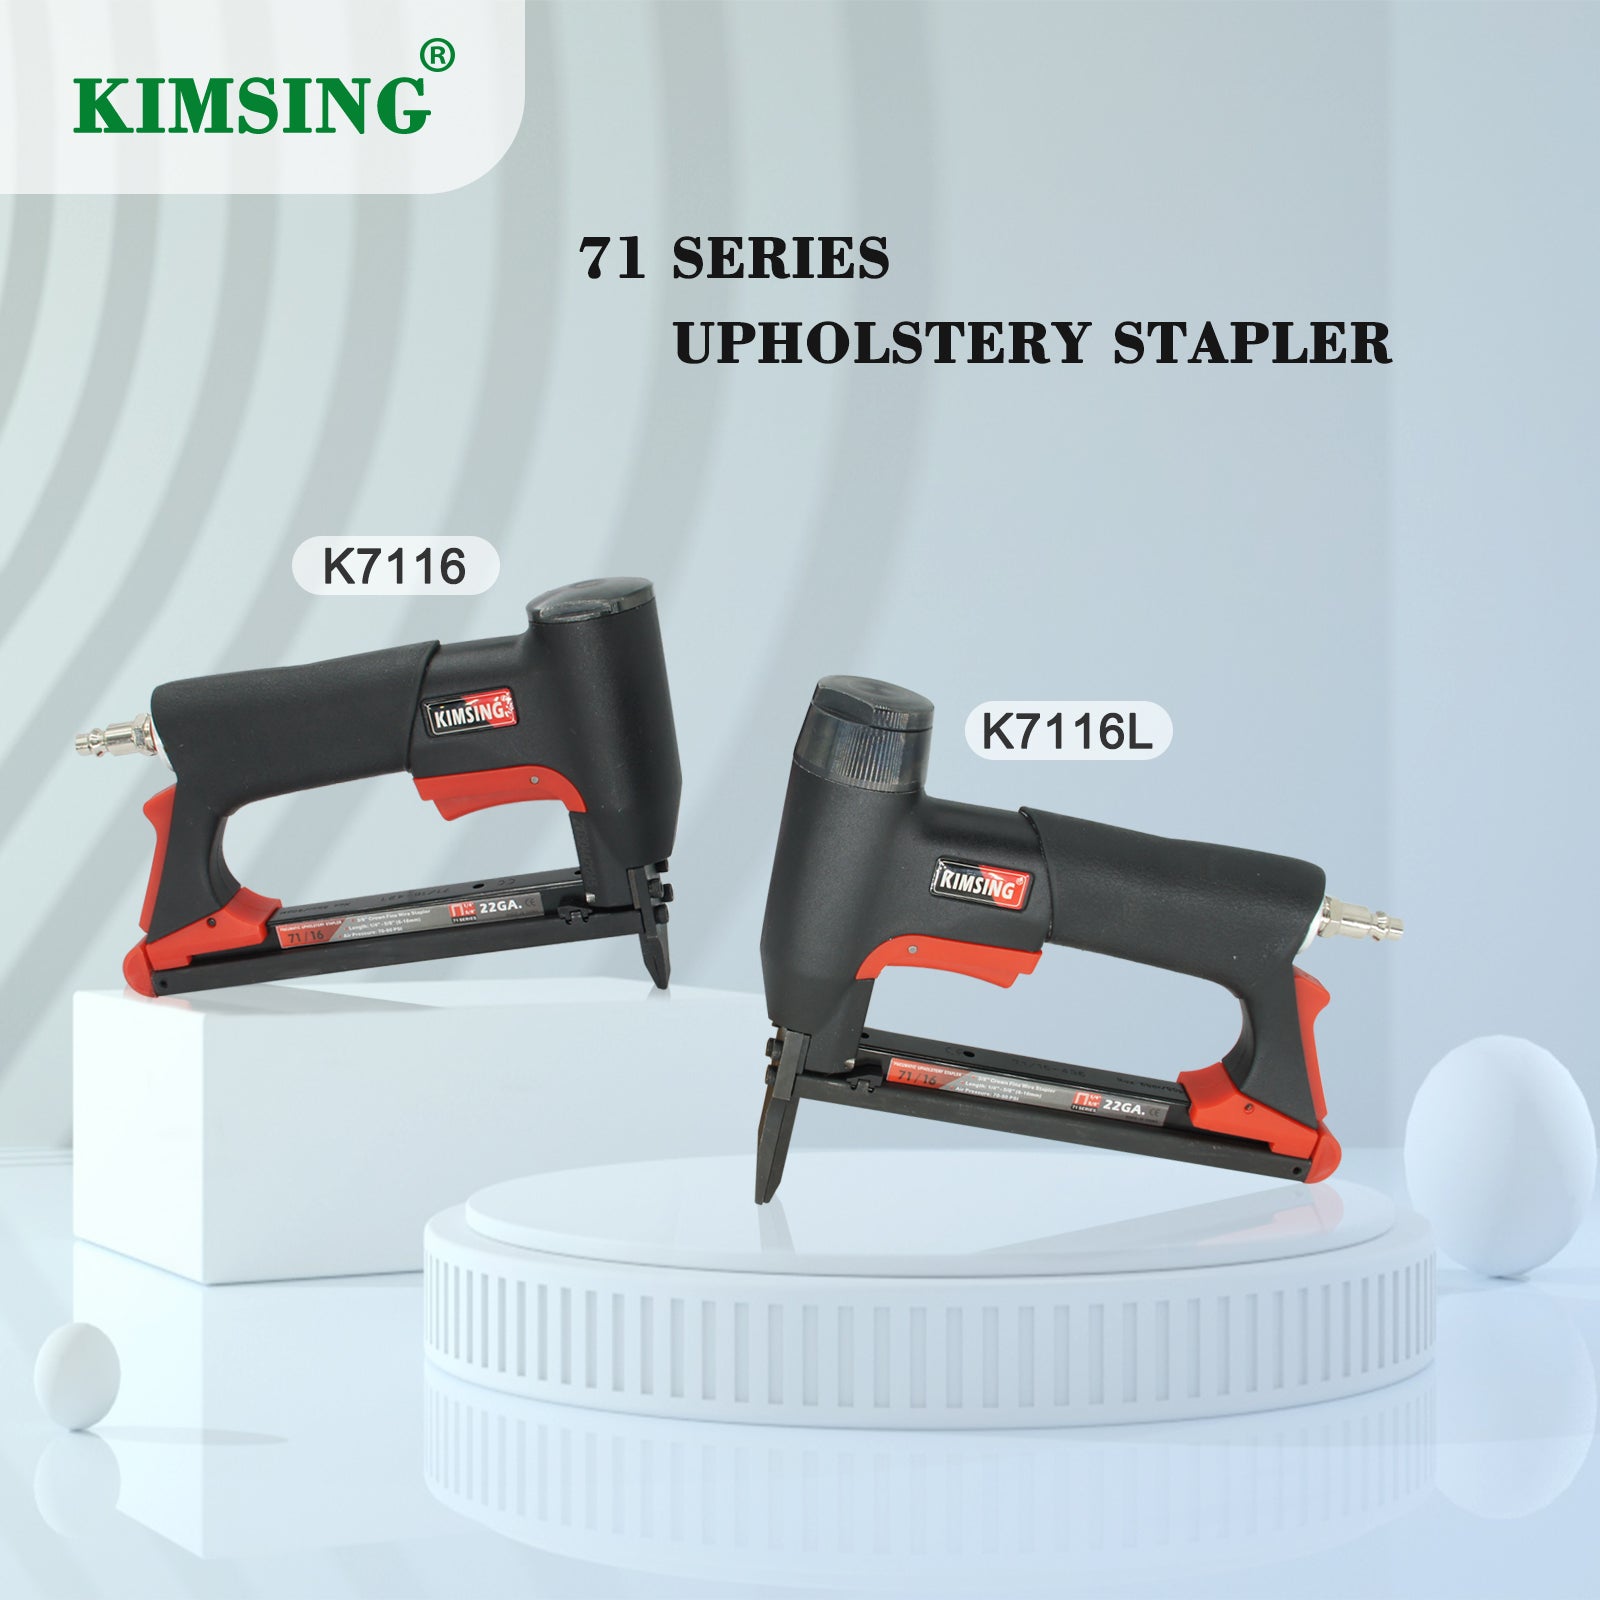 KIMSING K-7116L Upholstery Stapler 22 Gauge 3/8